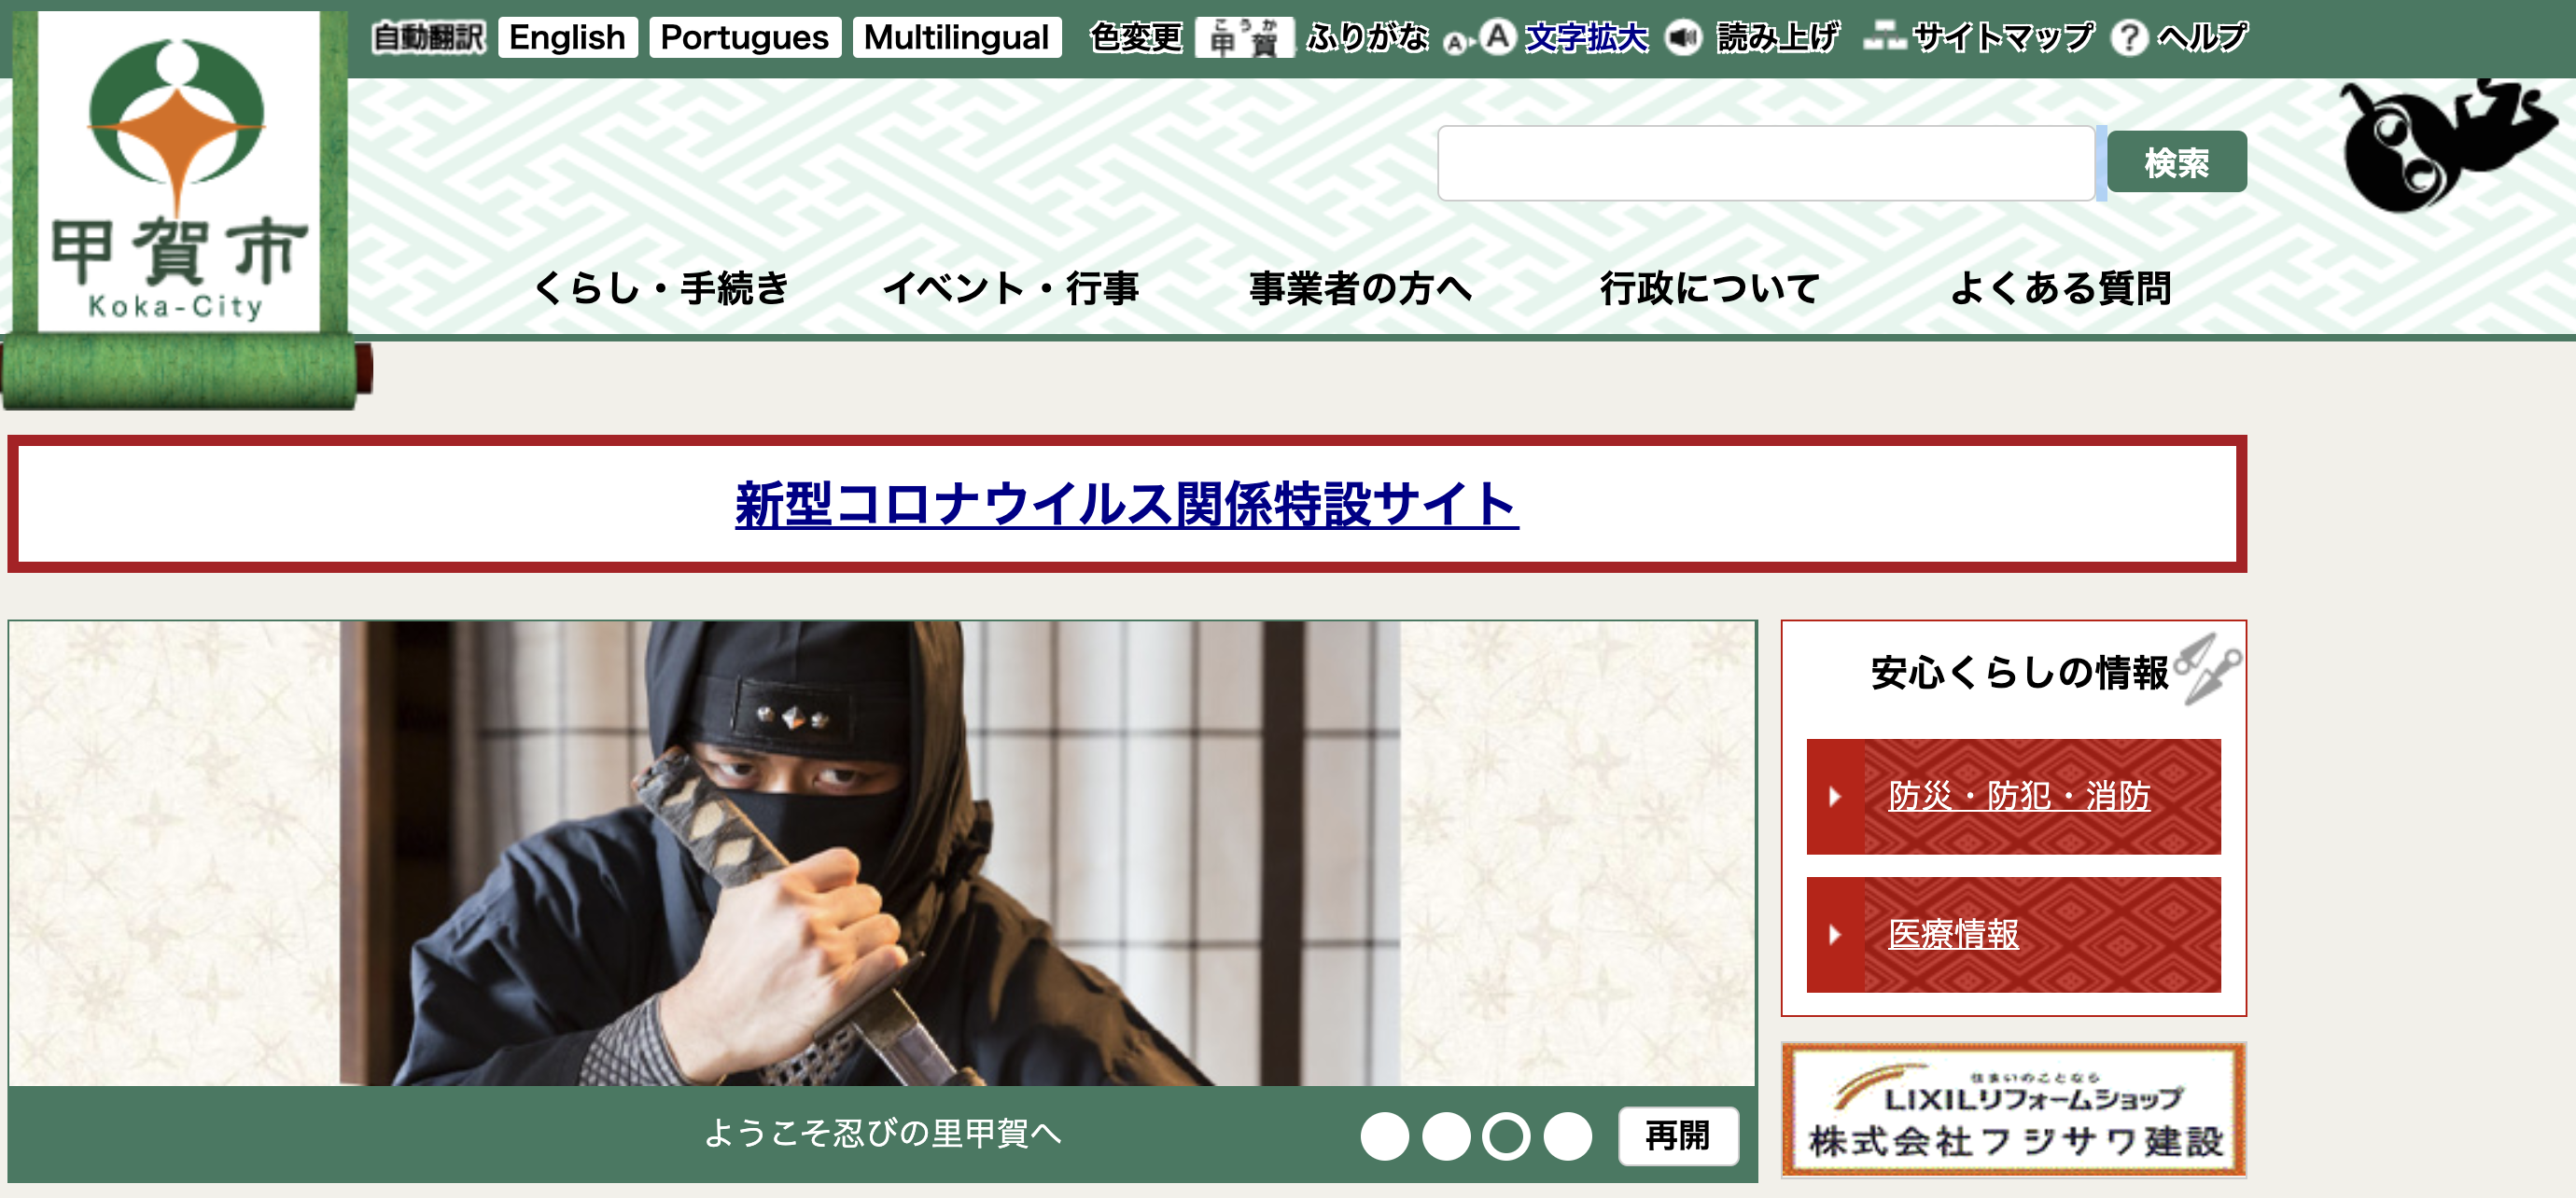 甲賀市の特別定額給付金をスマホで「オンライン申請」しました。５月２日〜オンライン申請開始